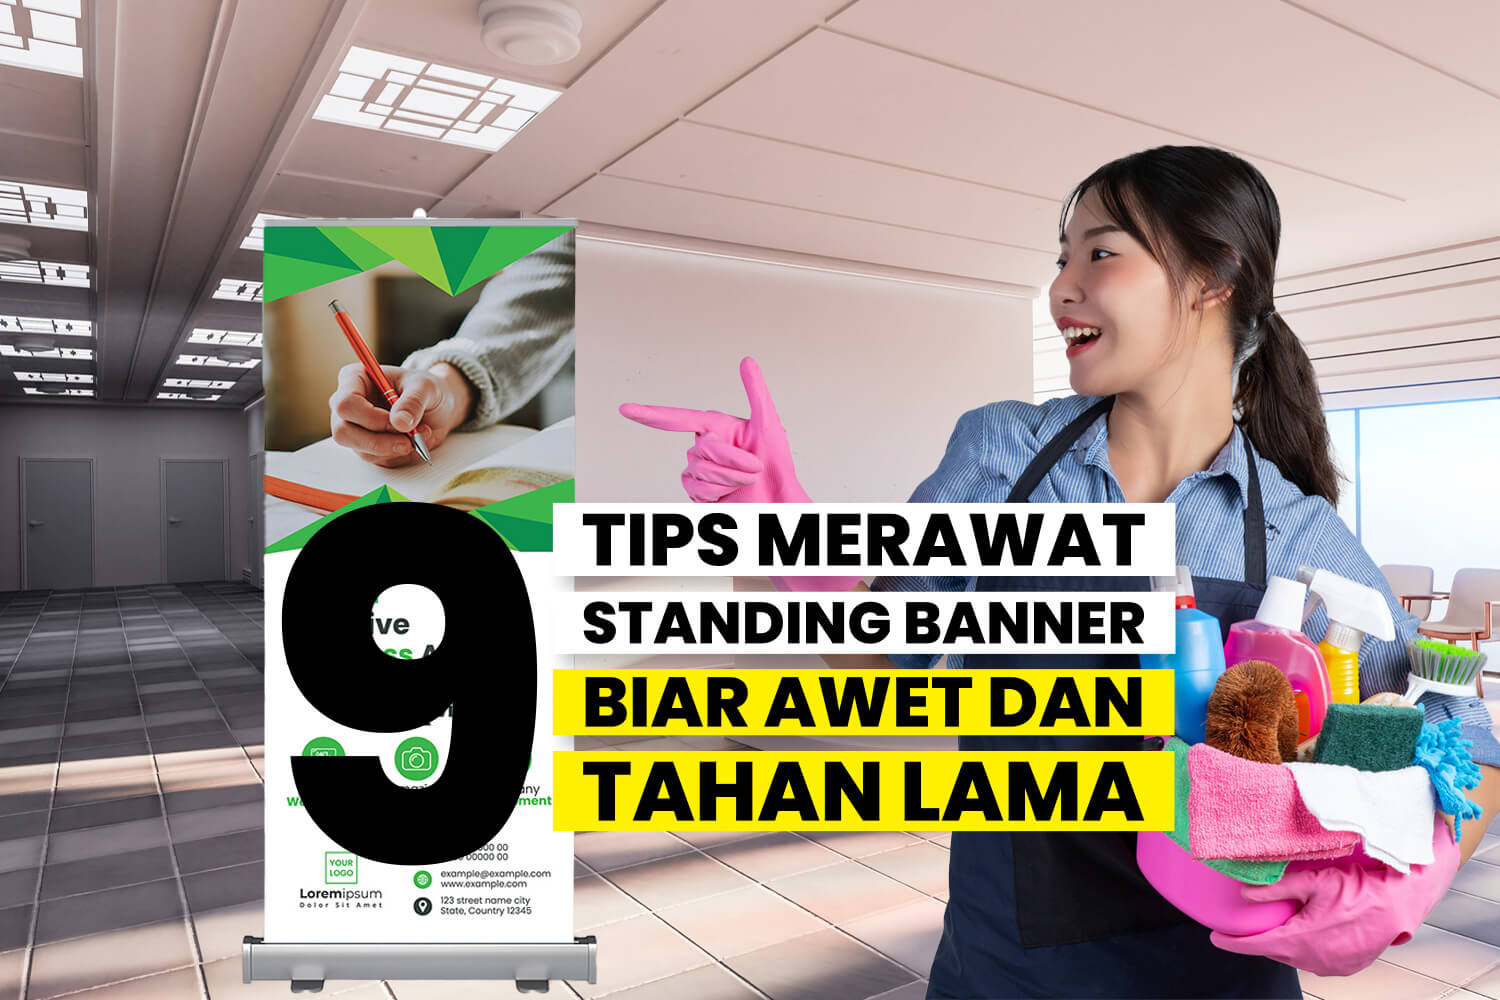 Tips Merawat Standing Banner Biar Awet Dan Tahan Lama.